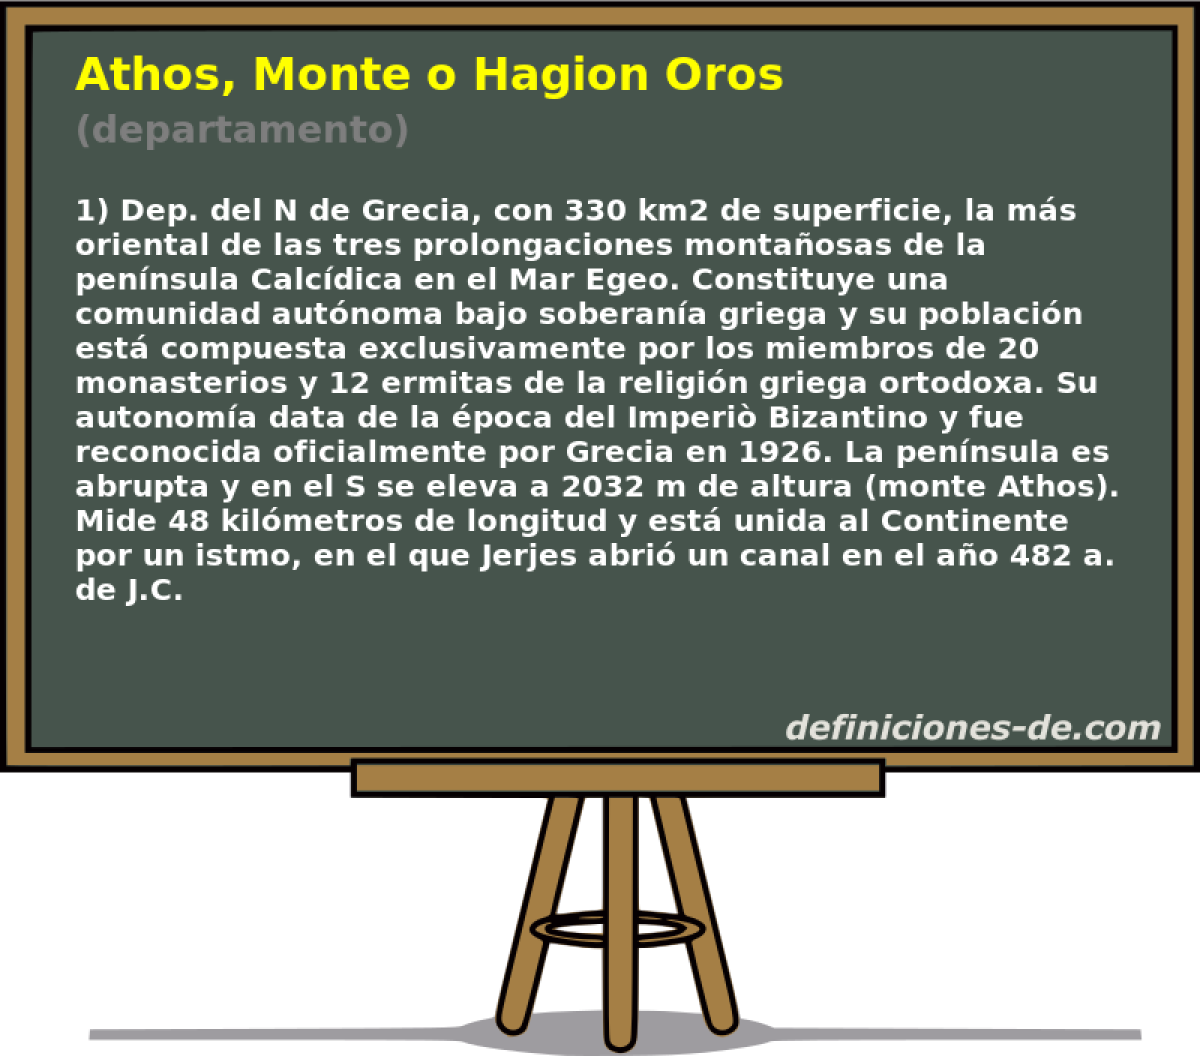 Athos, Monte o Hagion Oros (departamento)